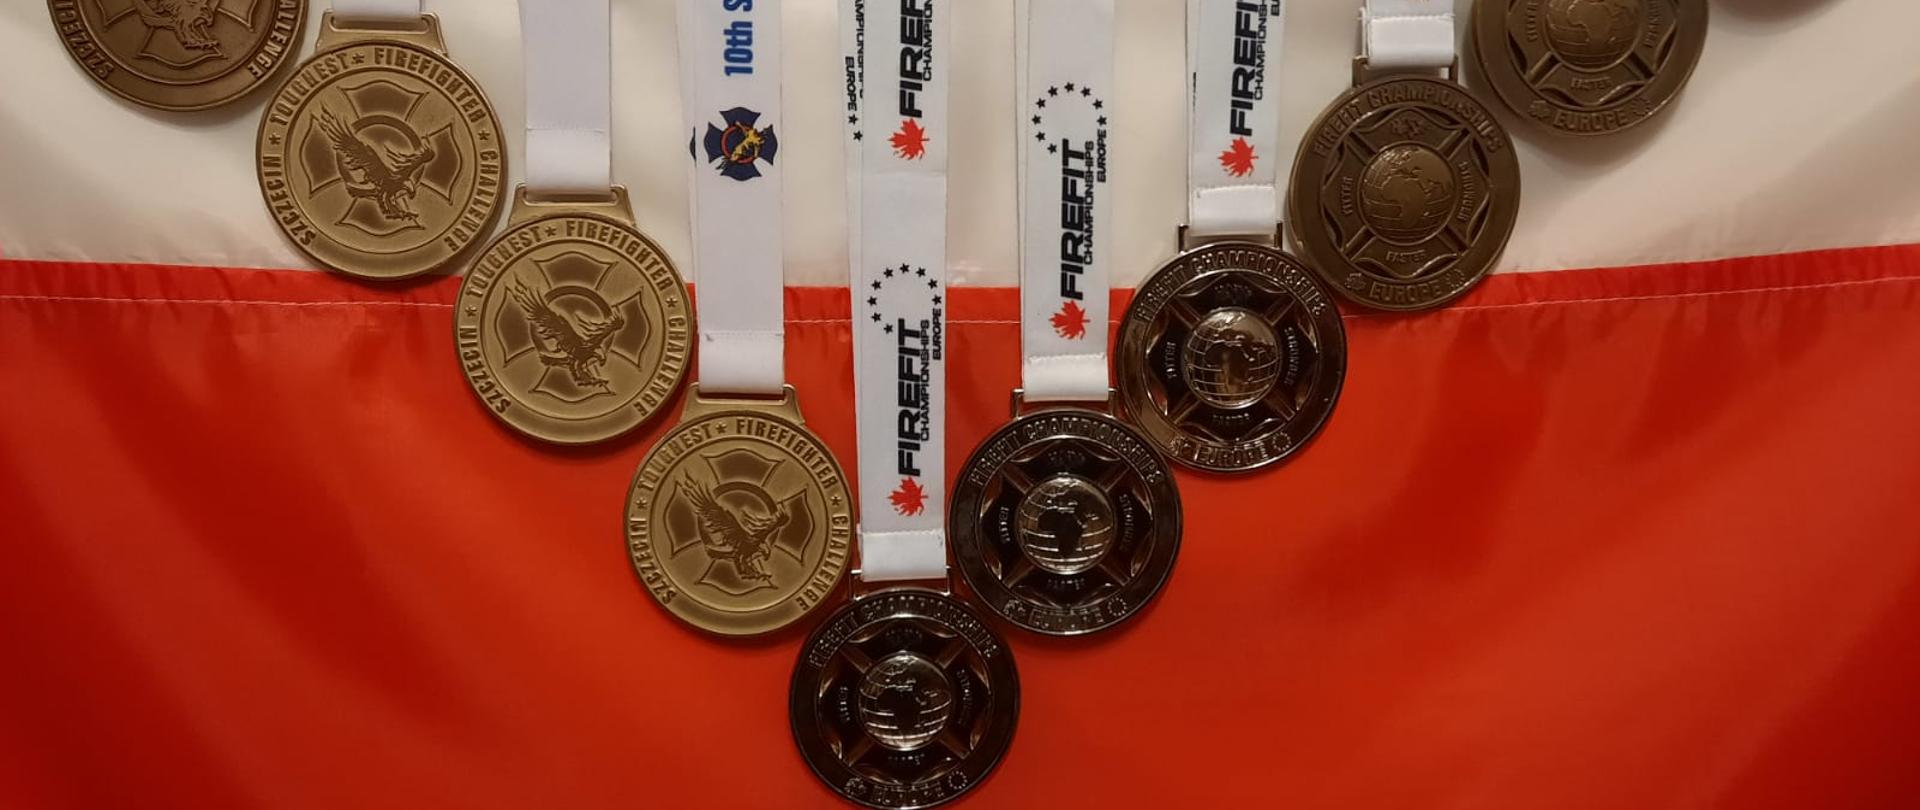 Zdjęcie przedstawia 10 medali eksponowanych na fladze Polski.